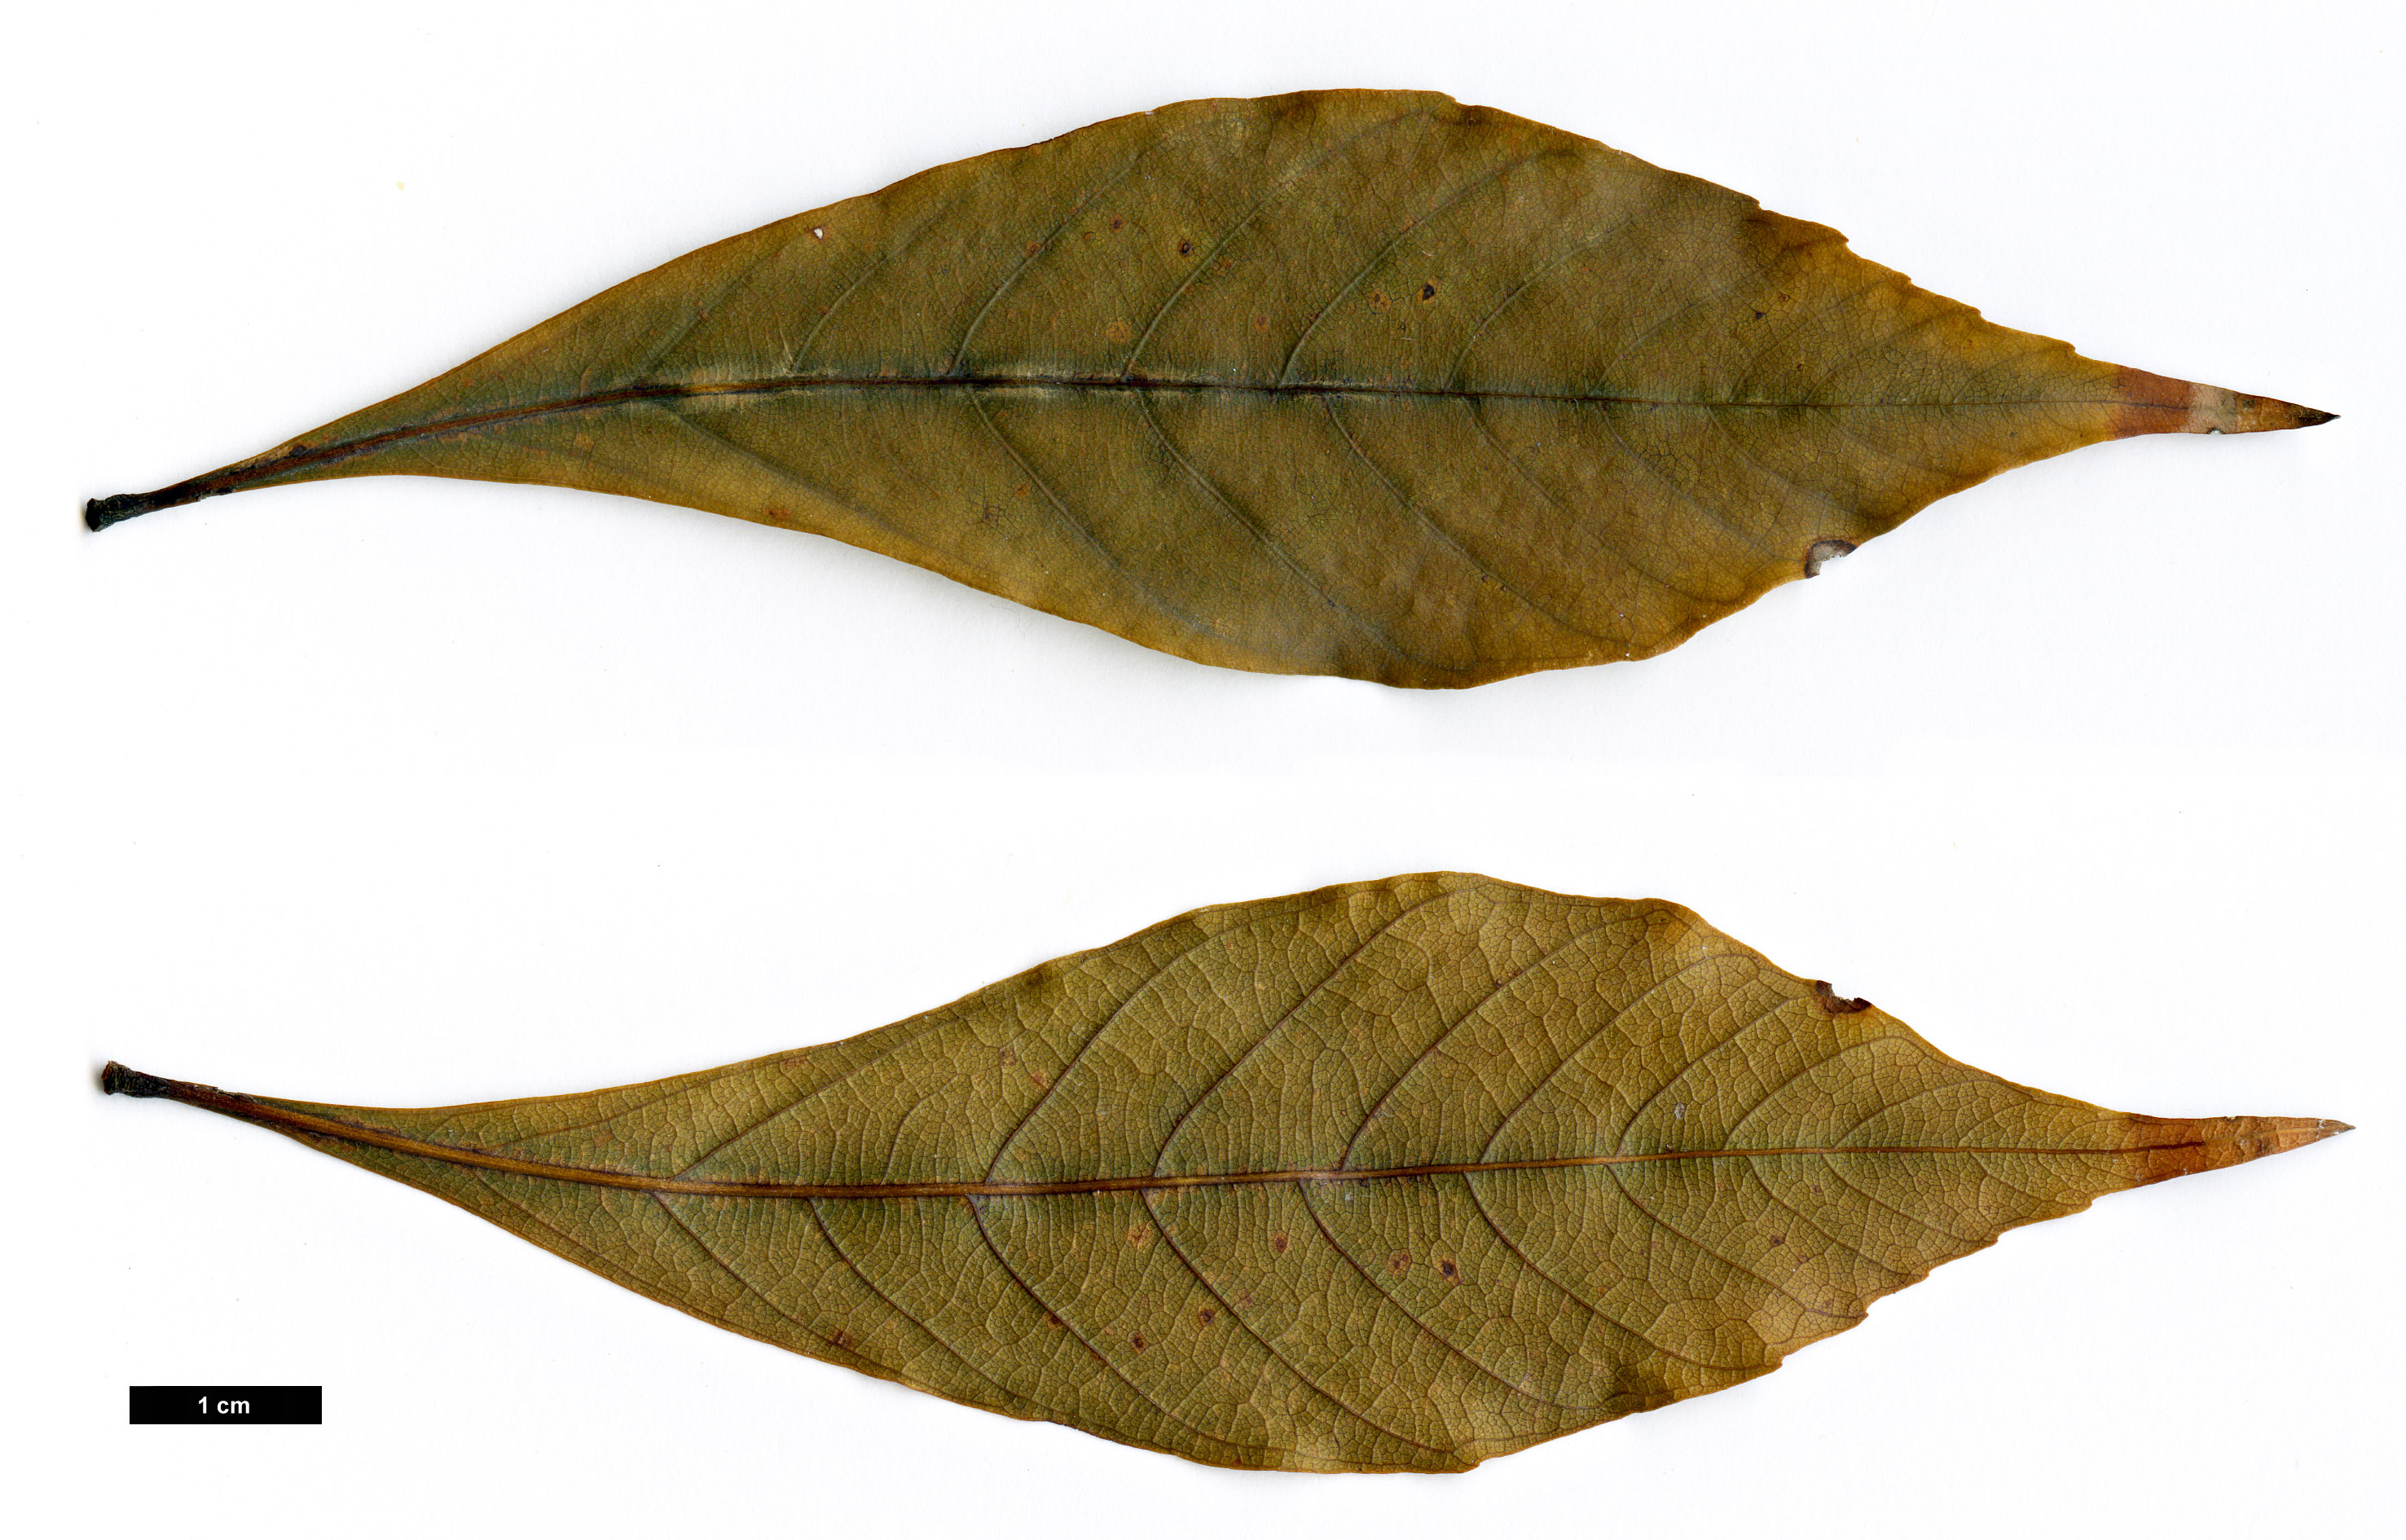 High resolution image: Family: Fagaceae - Genus: Quercus - Taxon: gemelliflora